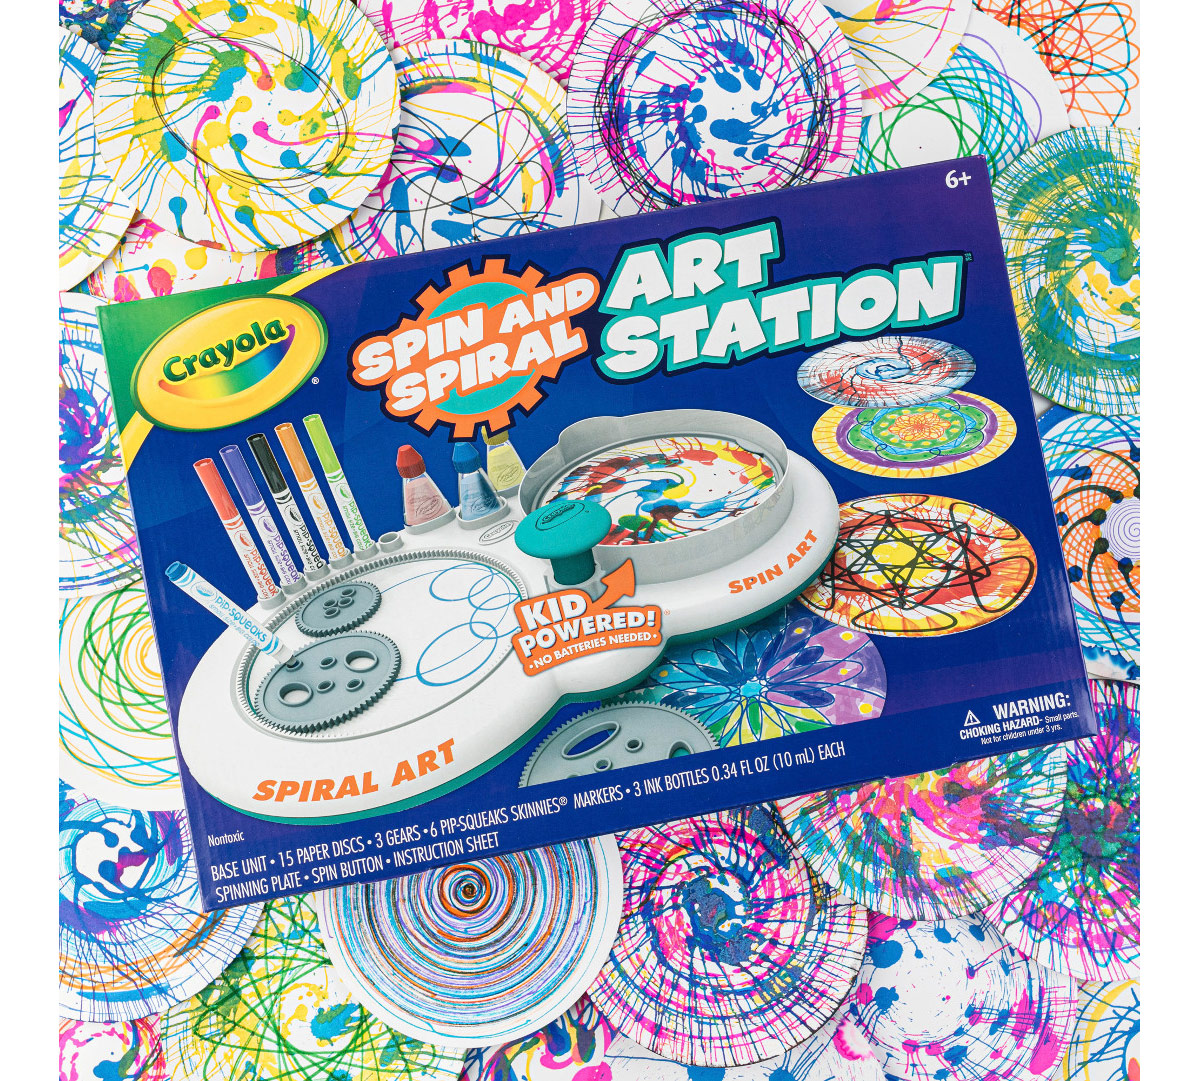 Spin & Spiral Art Station, DIY Craft for Kids, Crayola.com